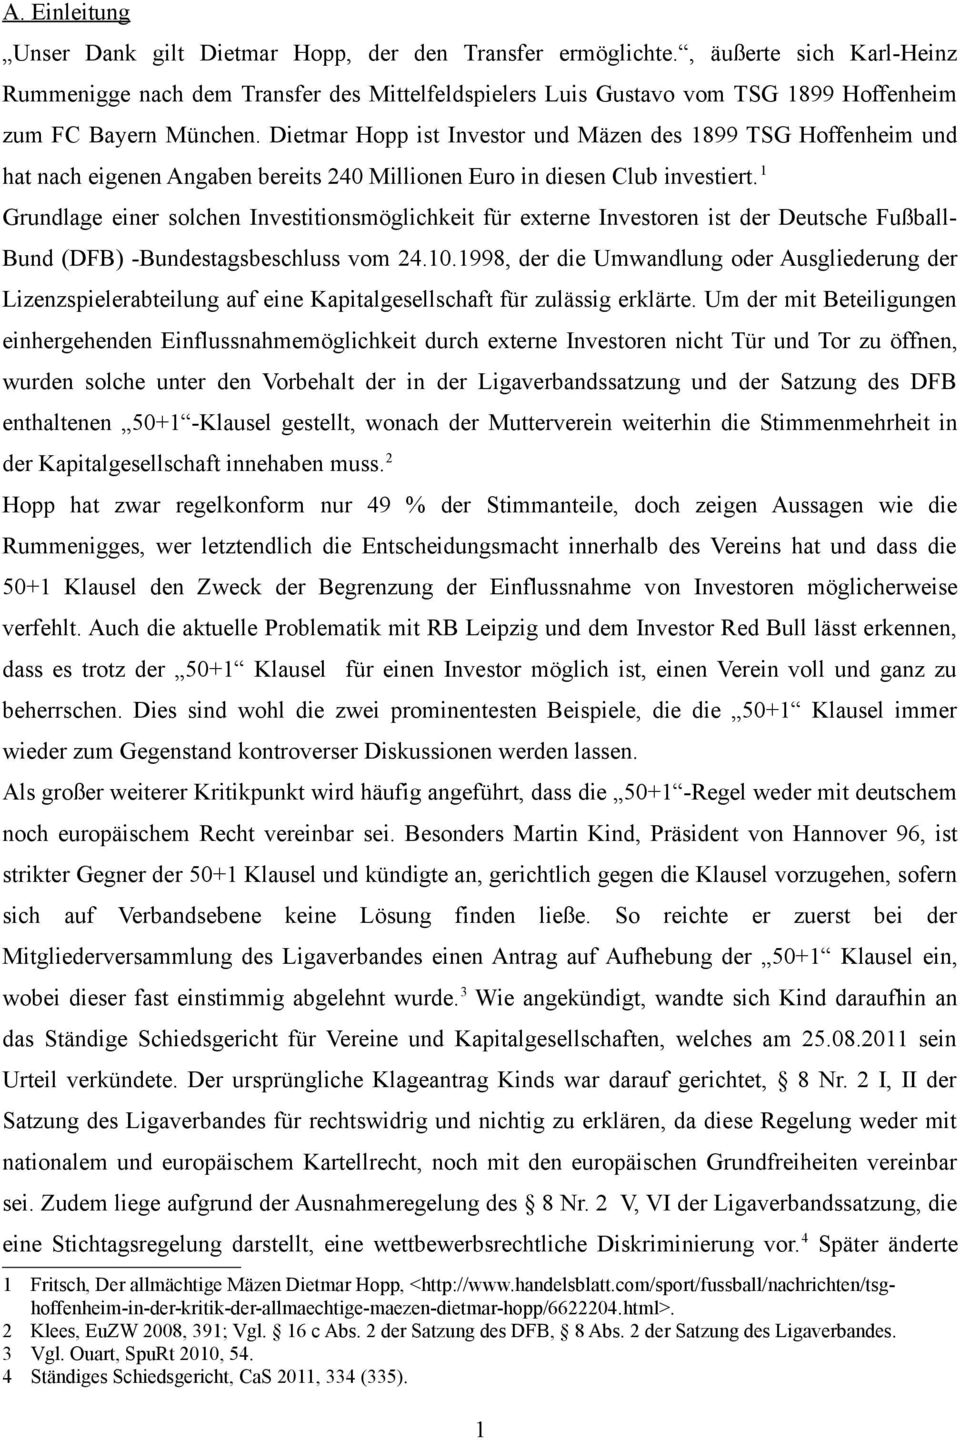 Dietmar Hopp ist Investor und Mäzen des 1899 TSG Hoffenheim und hat nach eigenen Angaben bereits 240 Millionen Euro in diesen Club investiert.